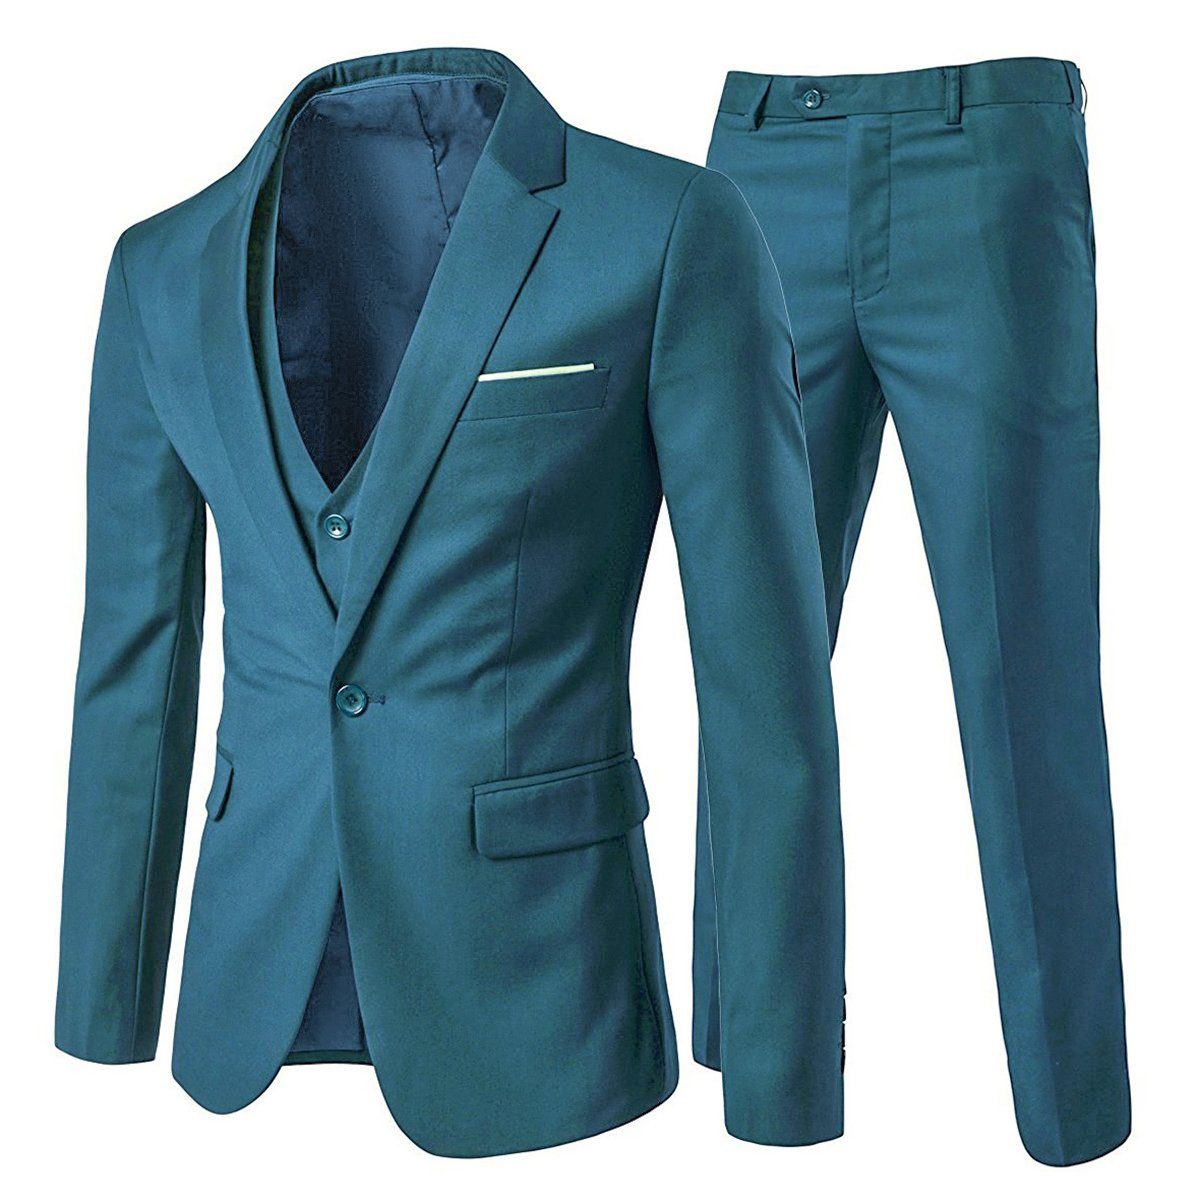 Allthemen Anzug (3 tlg, Sakko & Weste & Hose) Slim Fit Herrenanzug für  Business, Klassischer und eleganter Anzug für Geschäftstermine oder andere  Anlässe